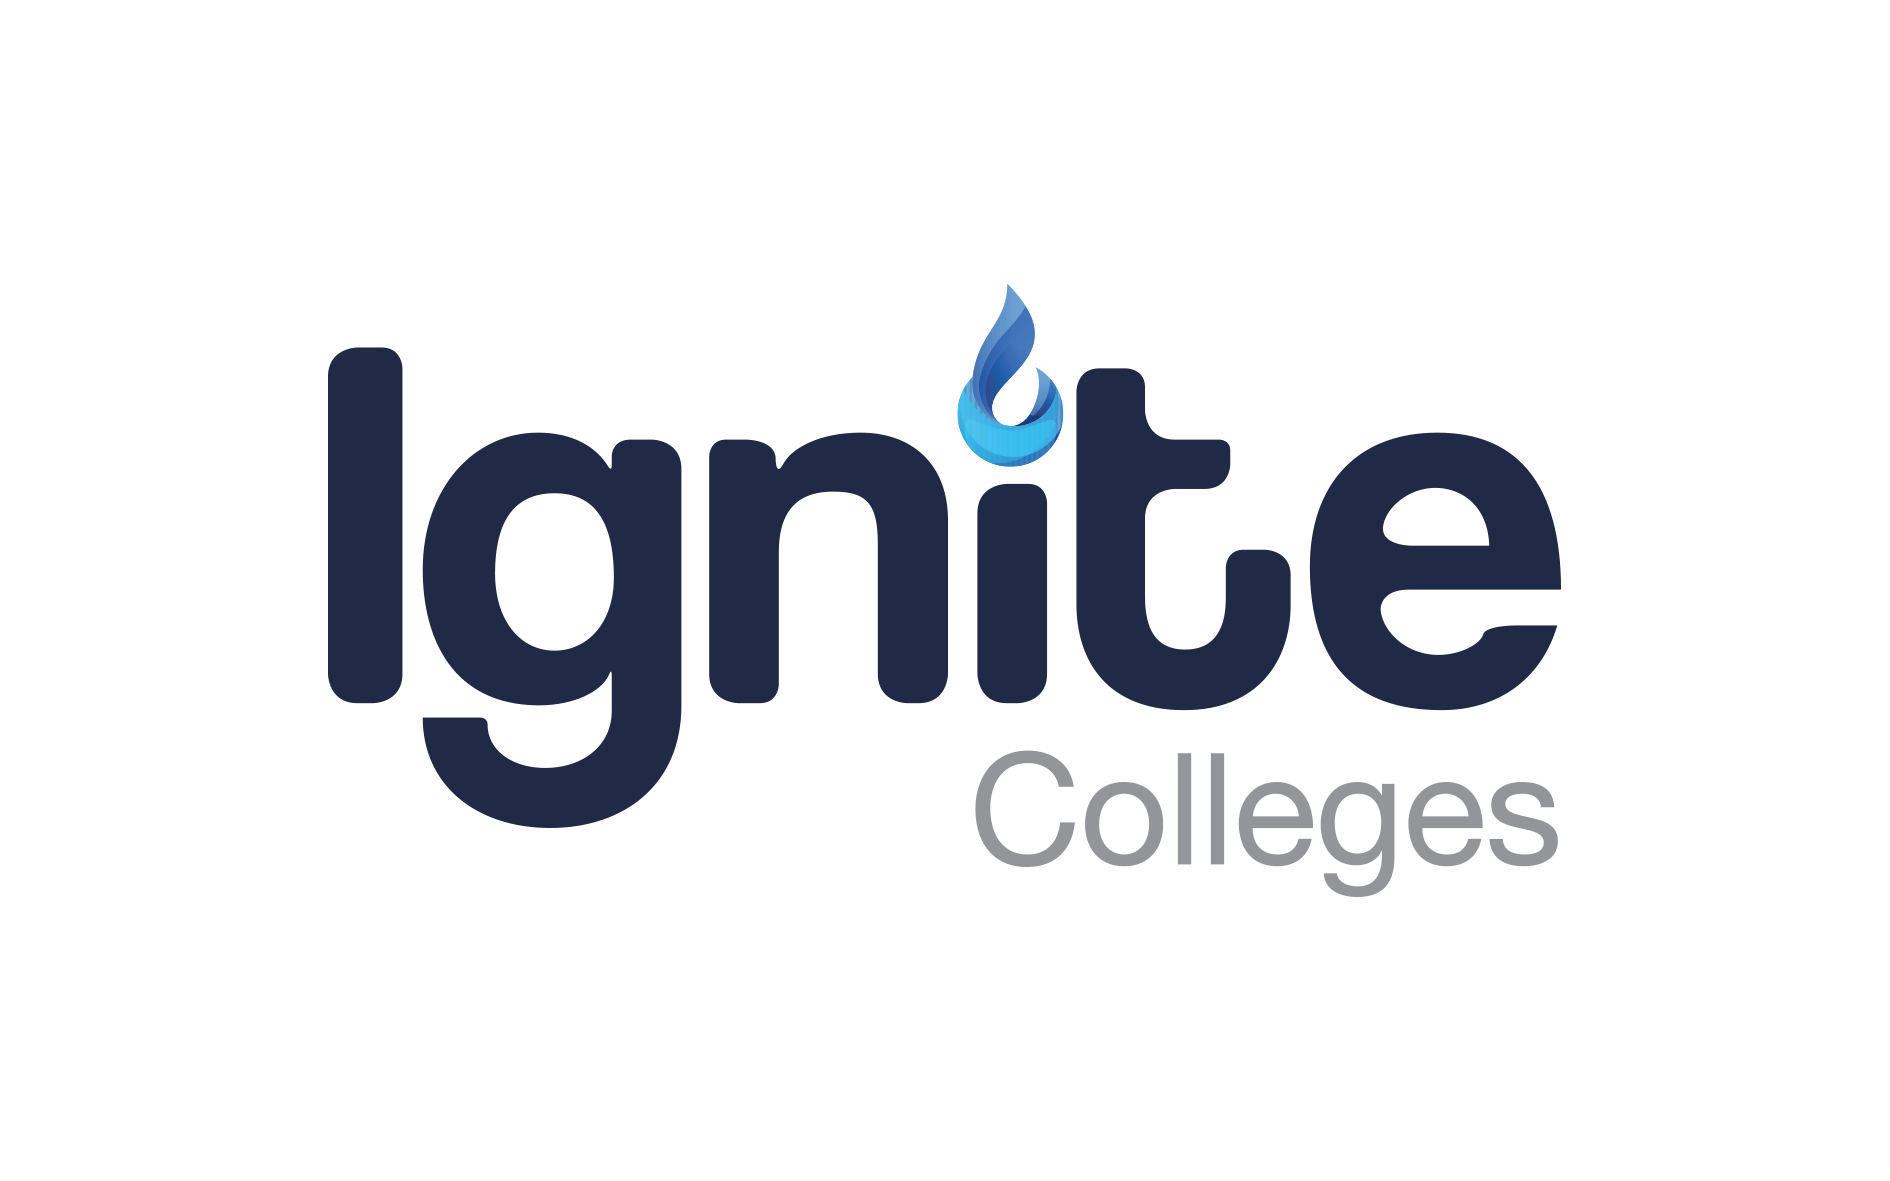 Ignite Colleges